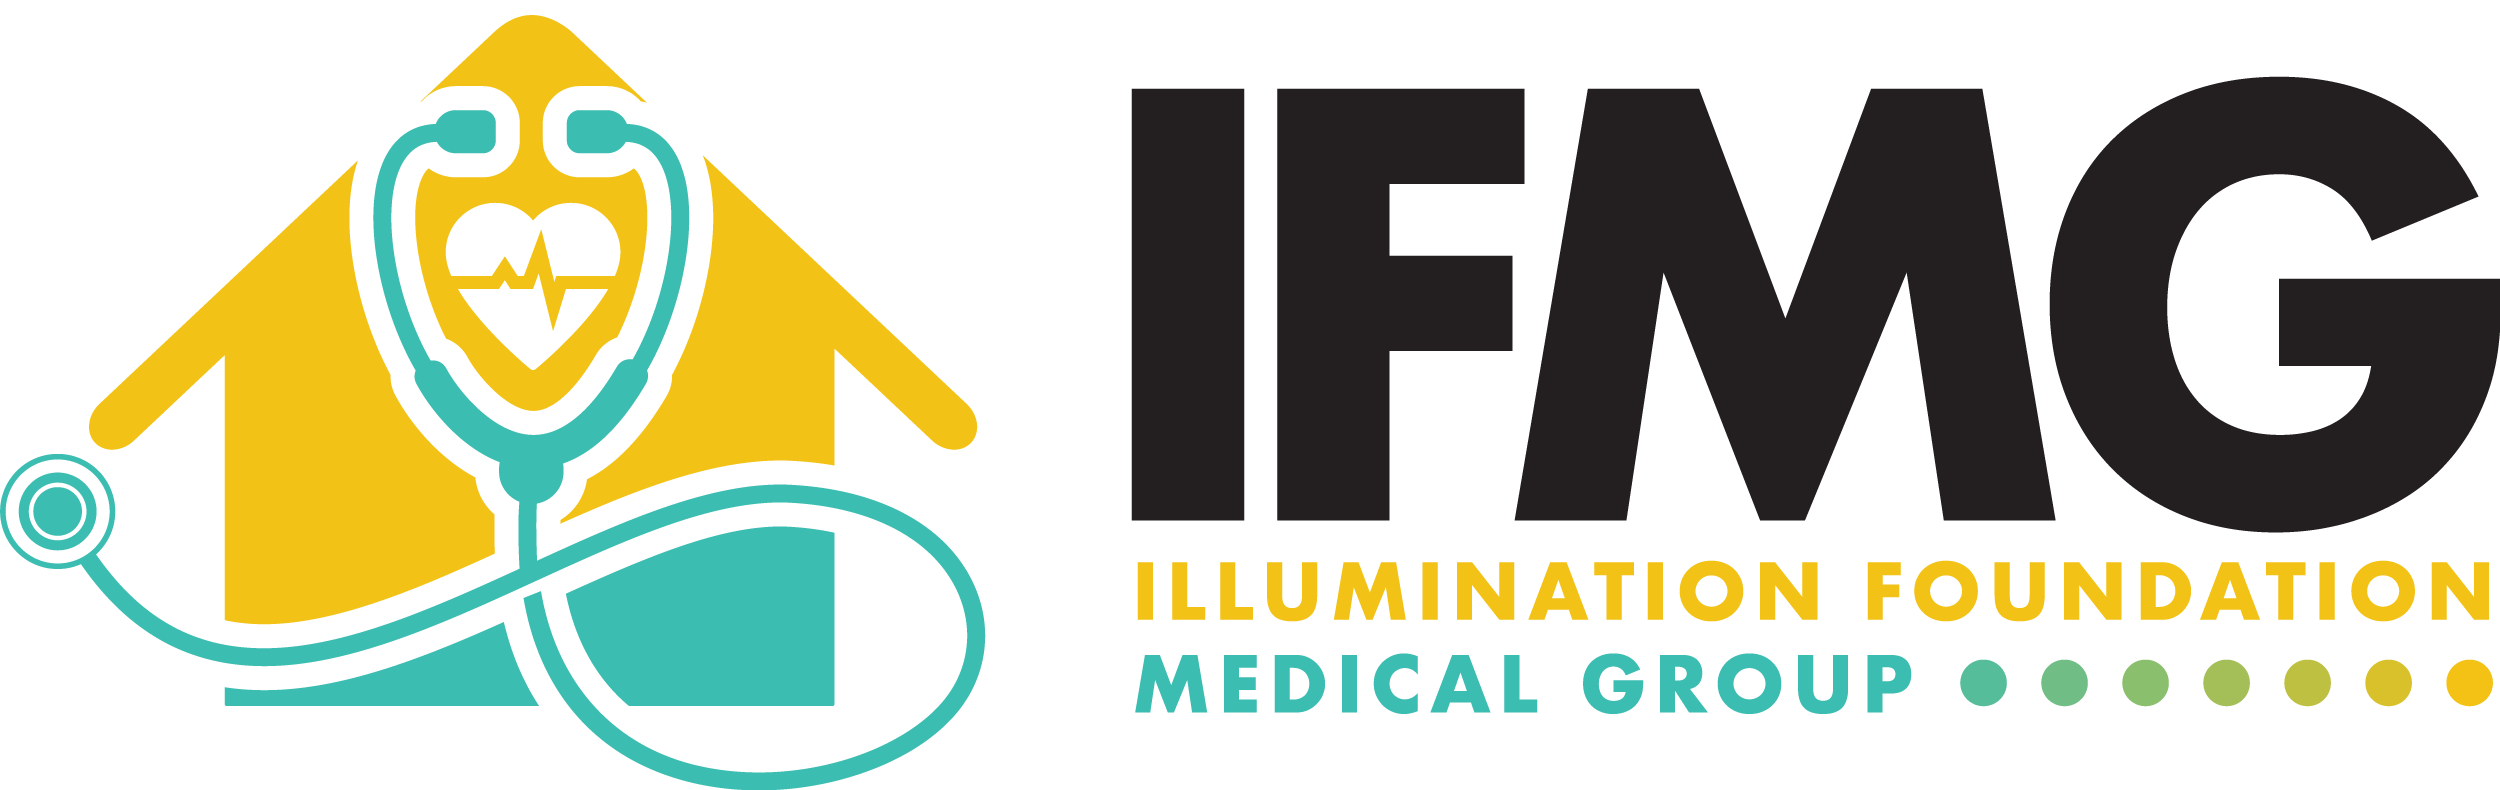 Illumination Foundation Medical Group